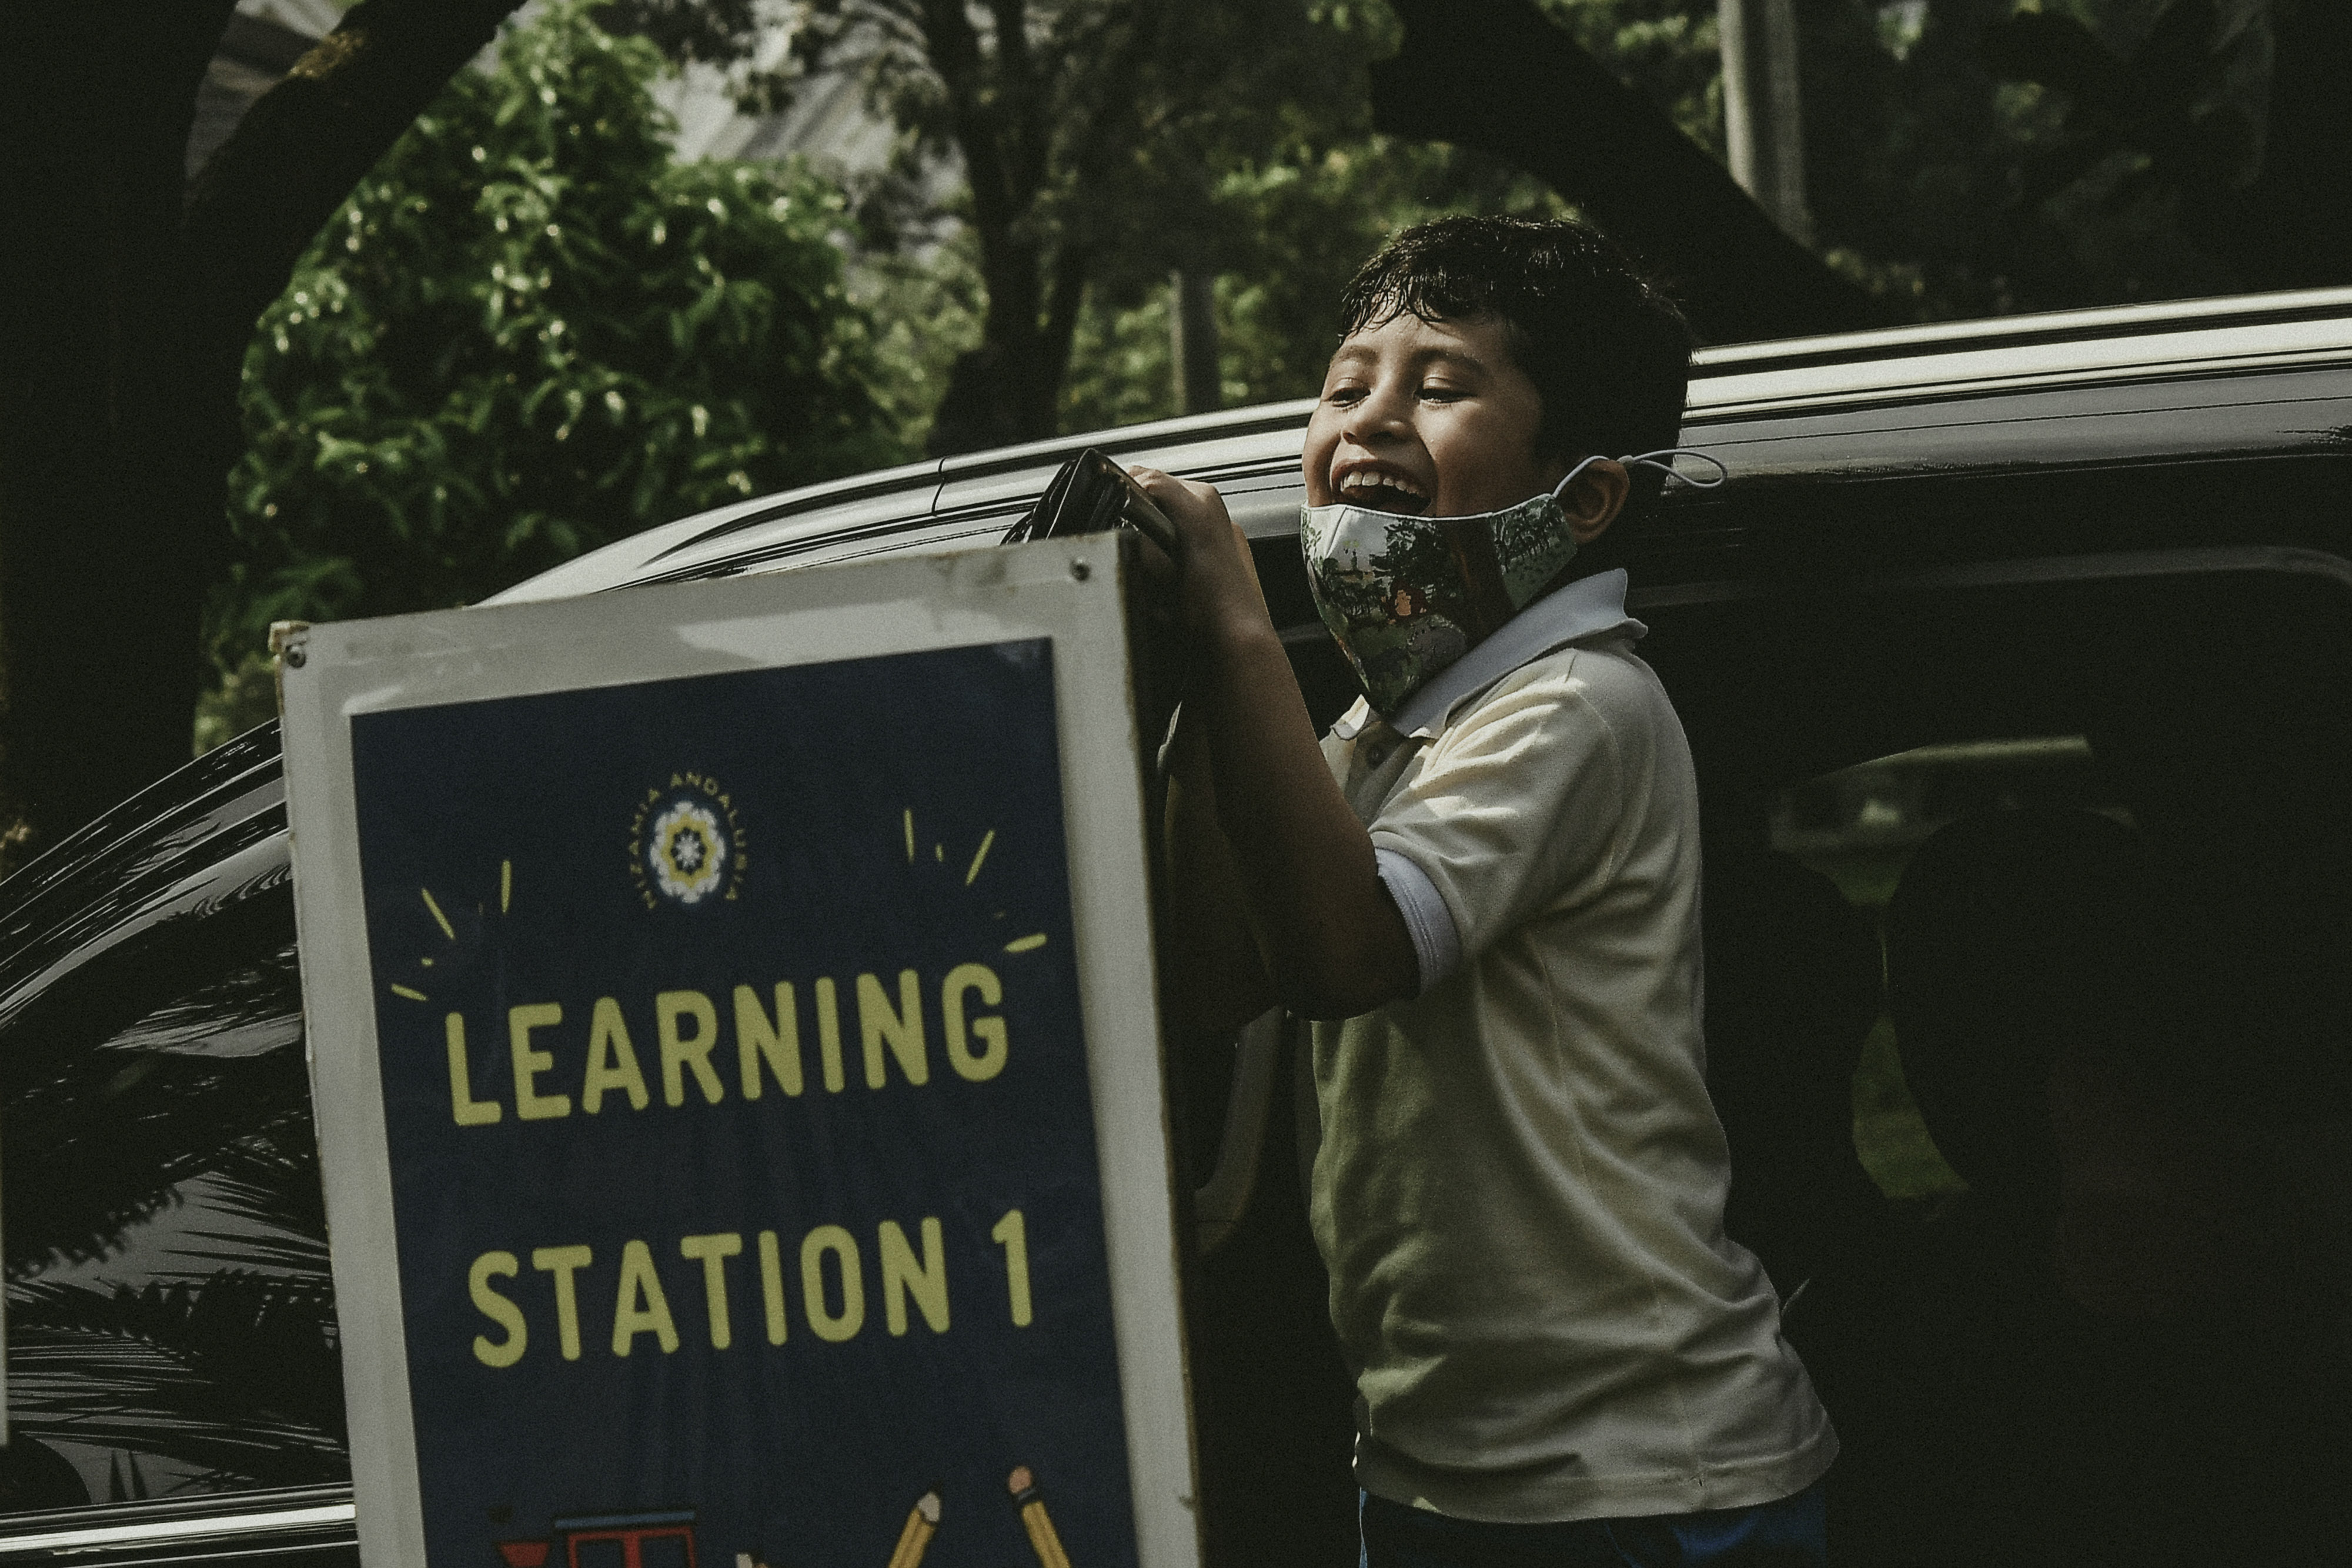 Seorang murid menyapa temannya saat tiba di area kegiatan belajar mengajar./Fakhri Hermansyah/ANTARA FOTO